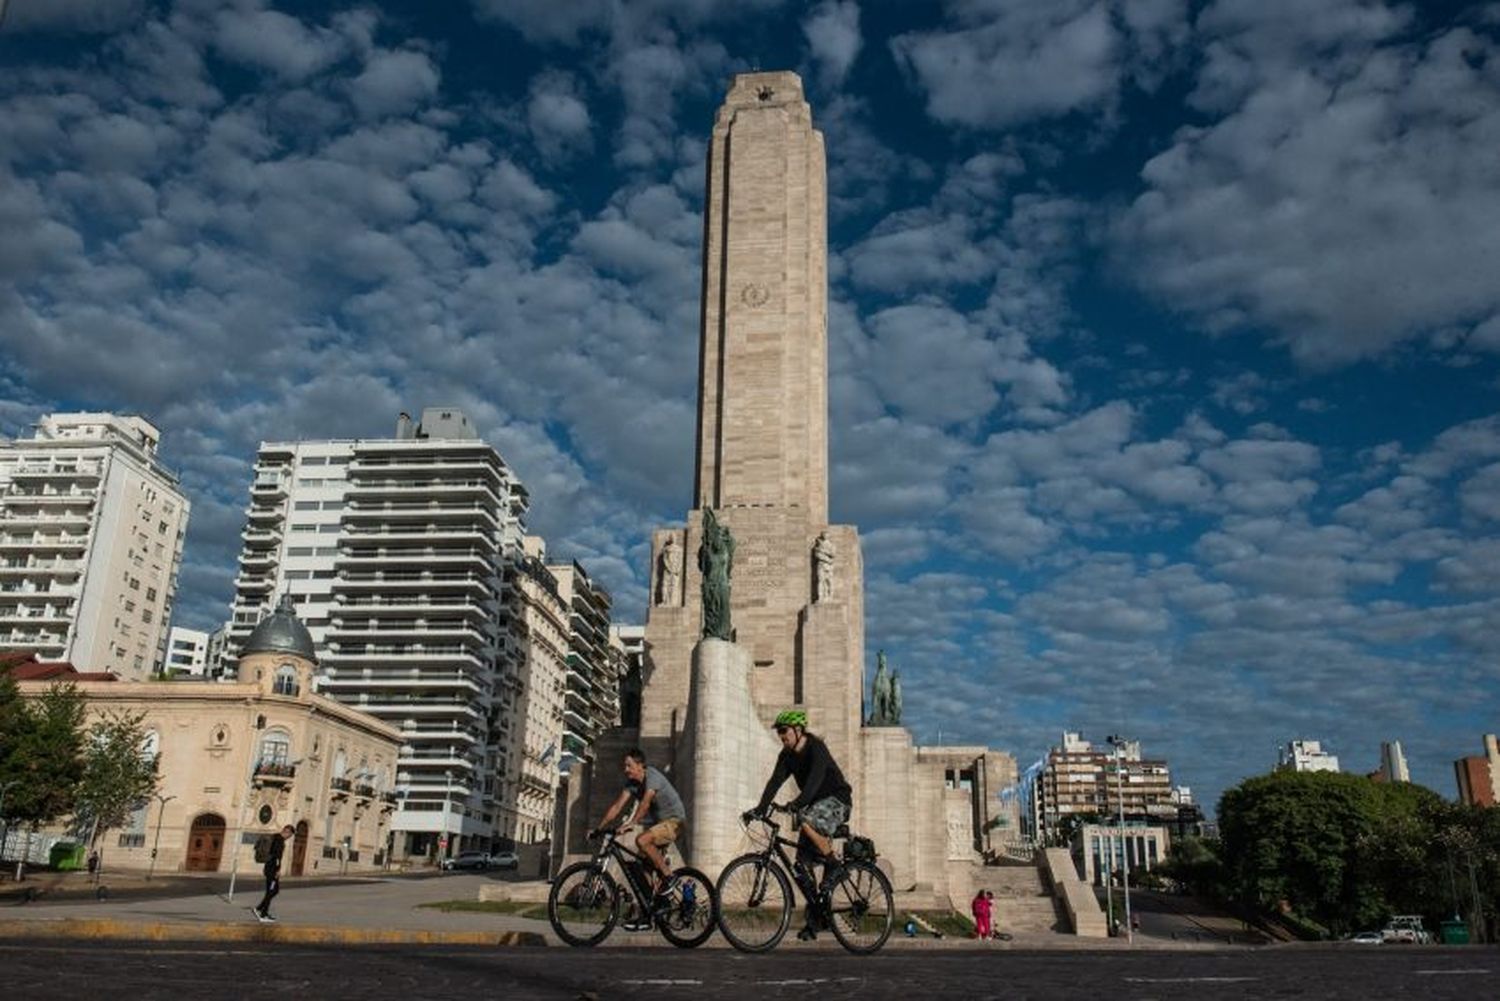 El fin de semana XL finaliza con un martes fresco y parcialmente nublado en Rosario